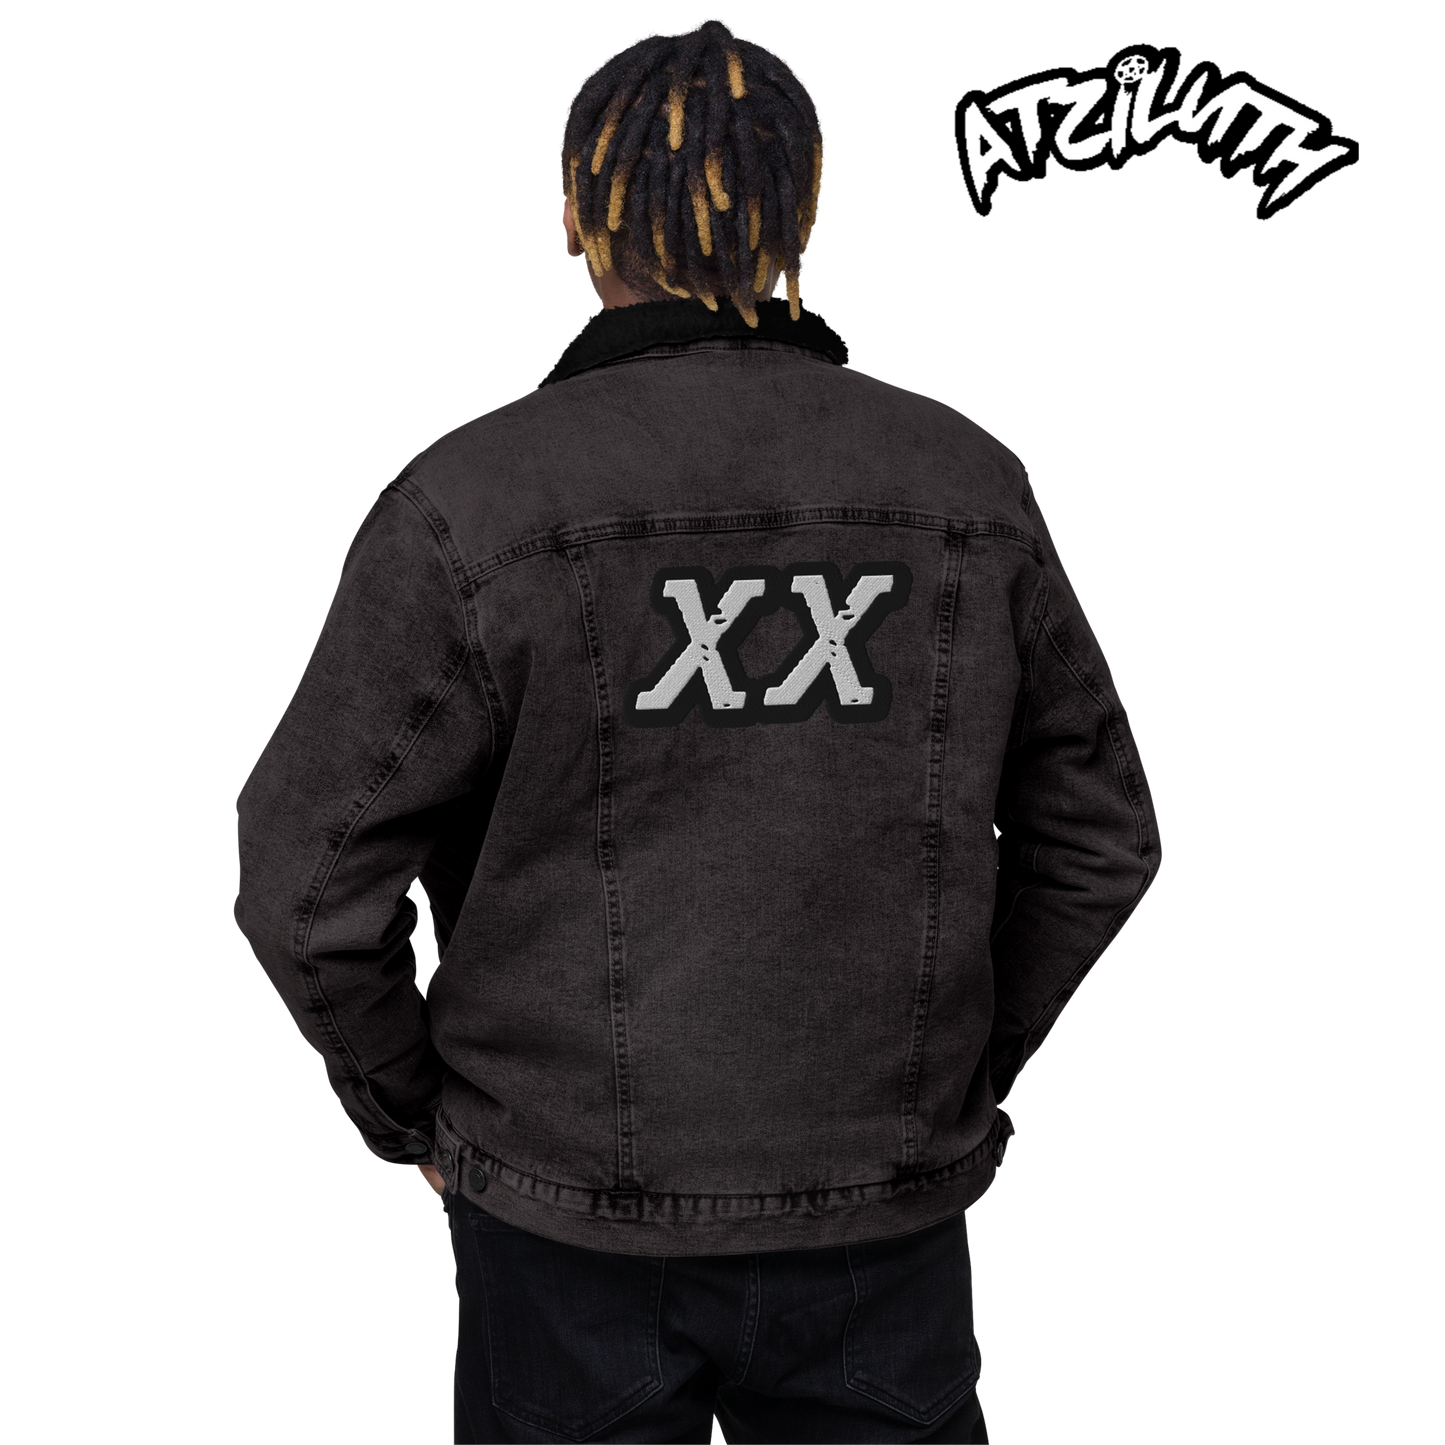 ATZ "XX" Unisex denim sherpa jacket